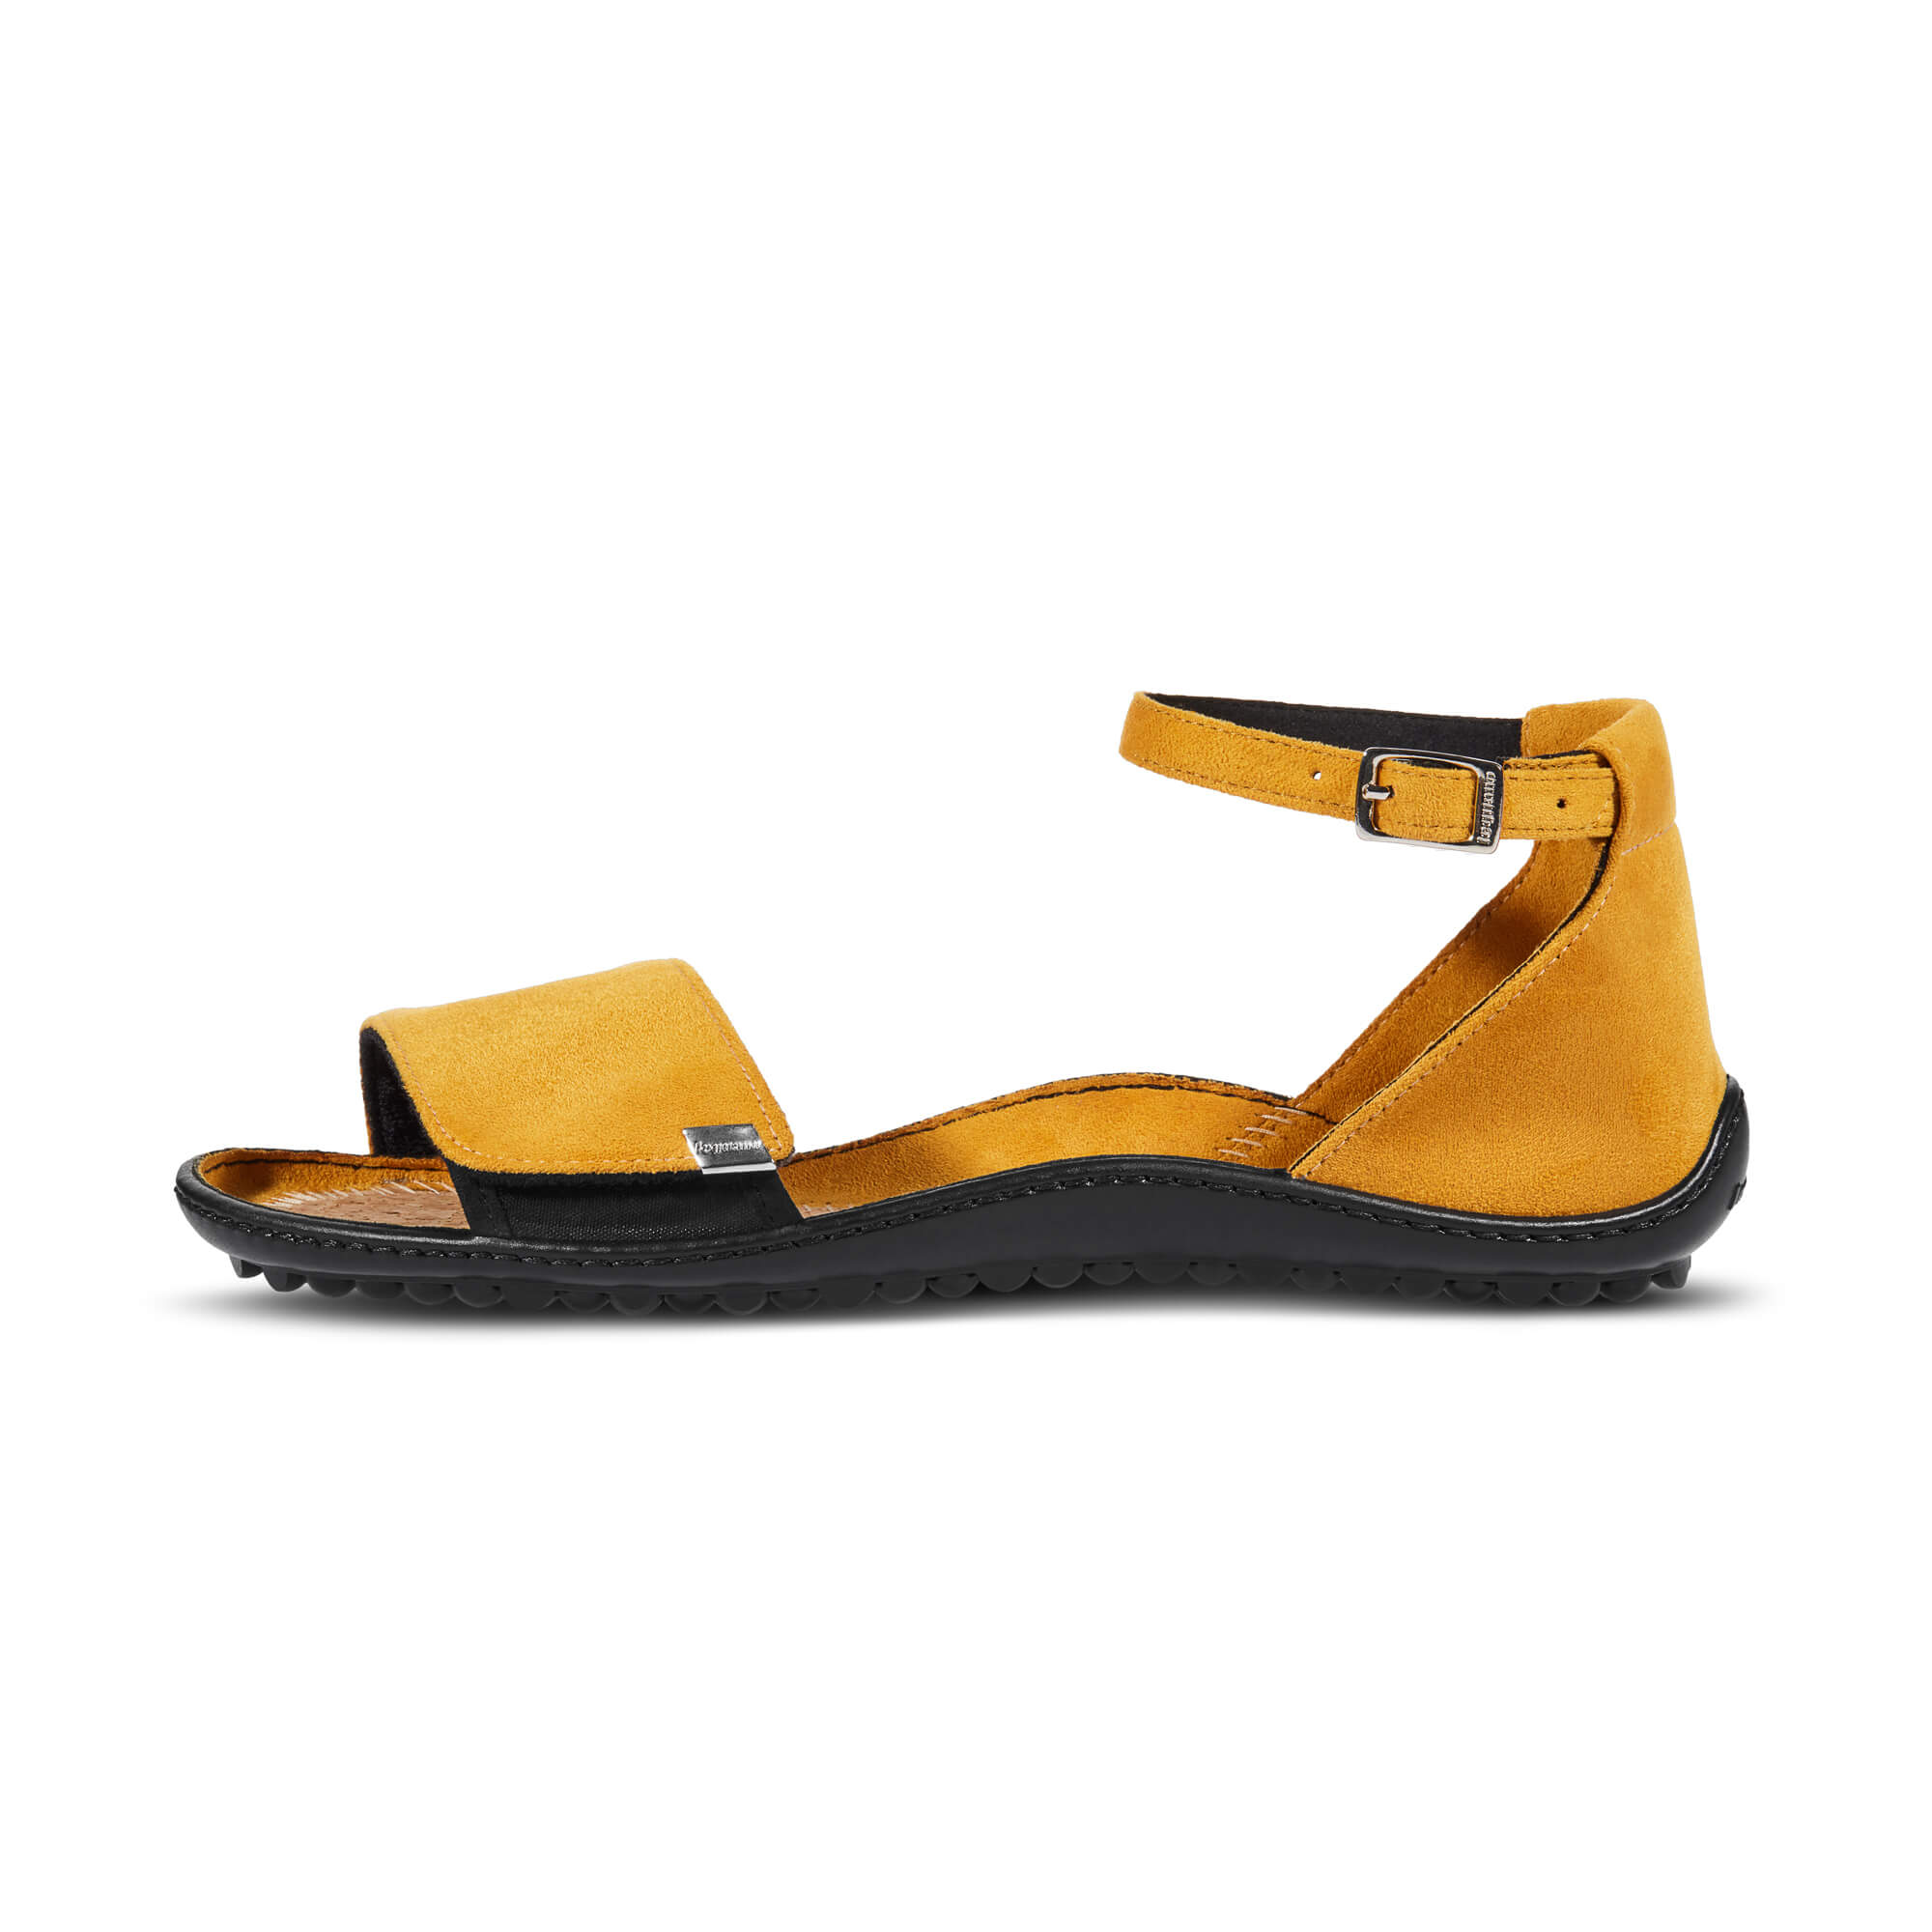 Leguano Jara barfods sandaler til kvinder i farven yellow, yderside